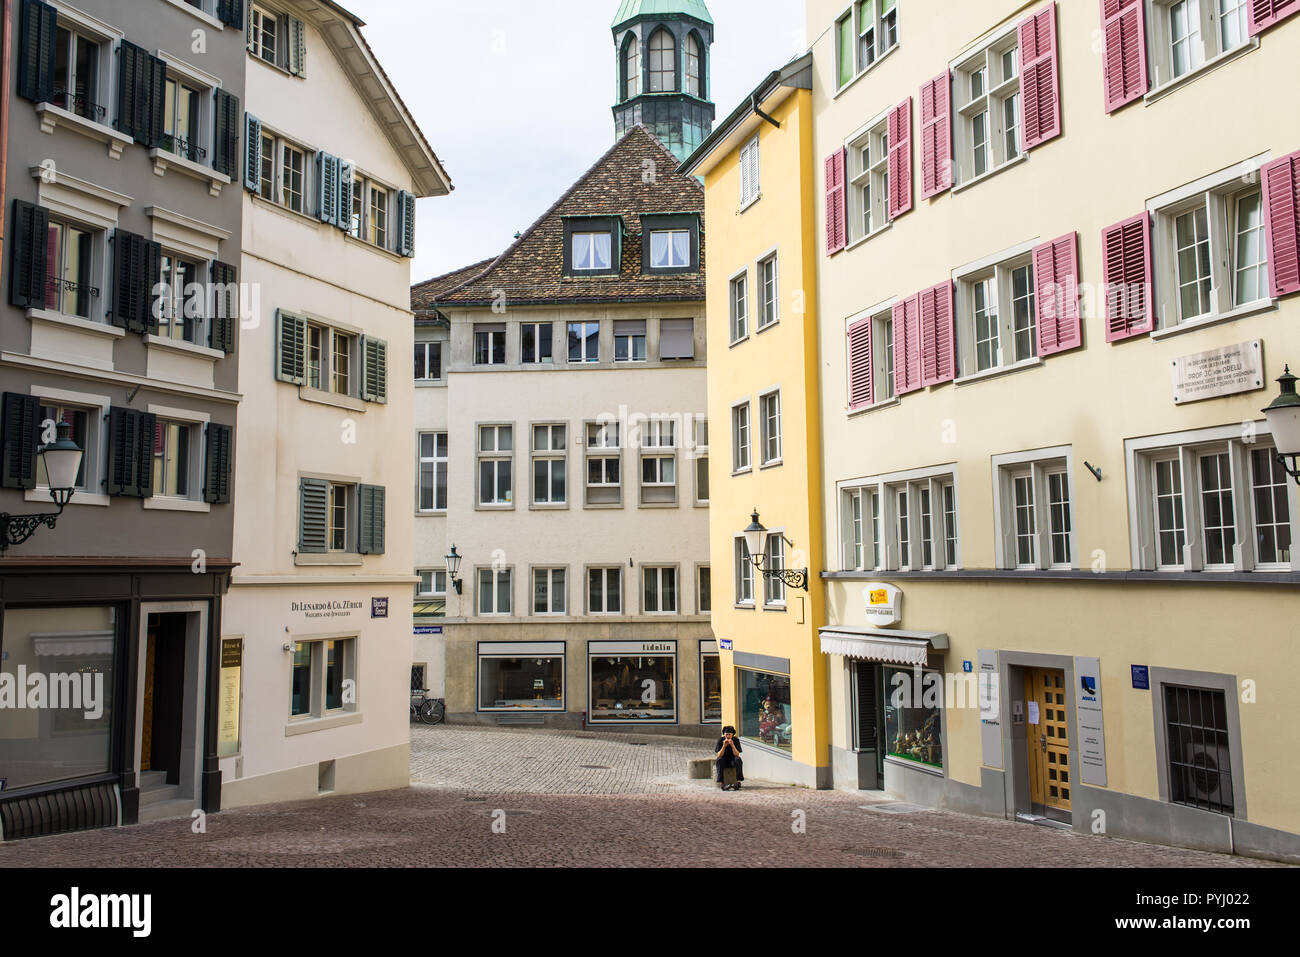 Zurigo, Svizzera - Marzo 2017: Glocken-Gasse un viale medievale street nel centro di Zurigo, Svizzera Foto Stock